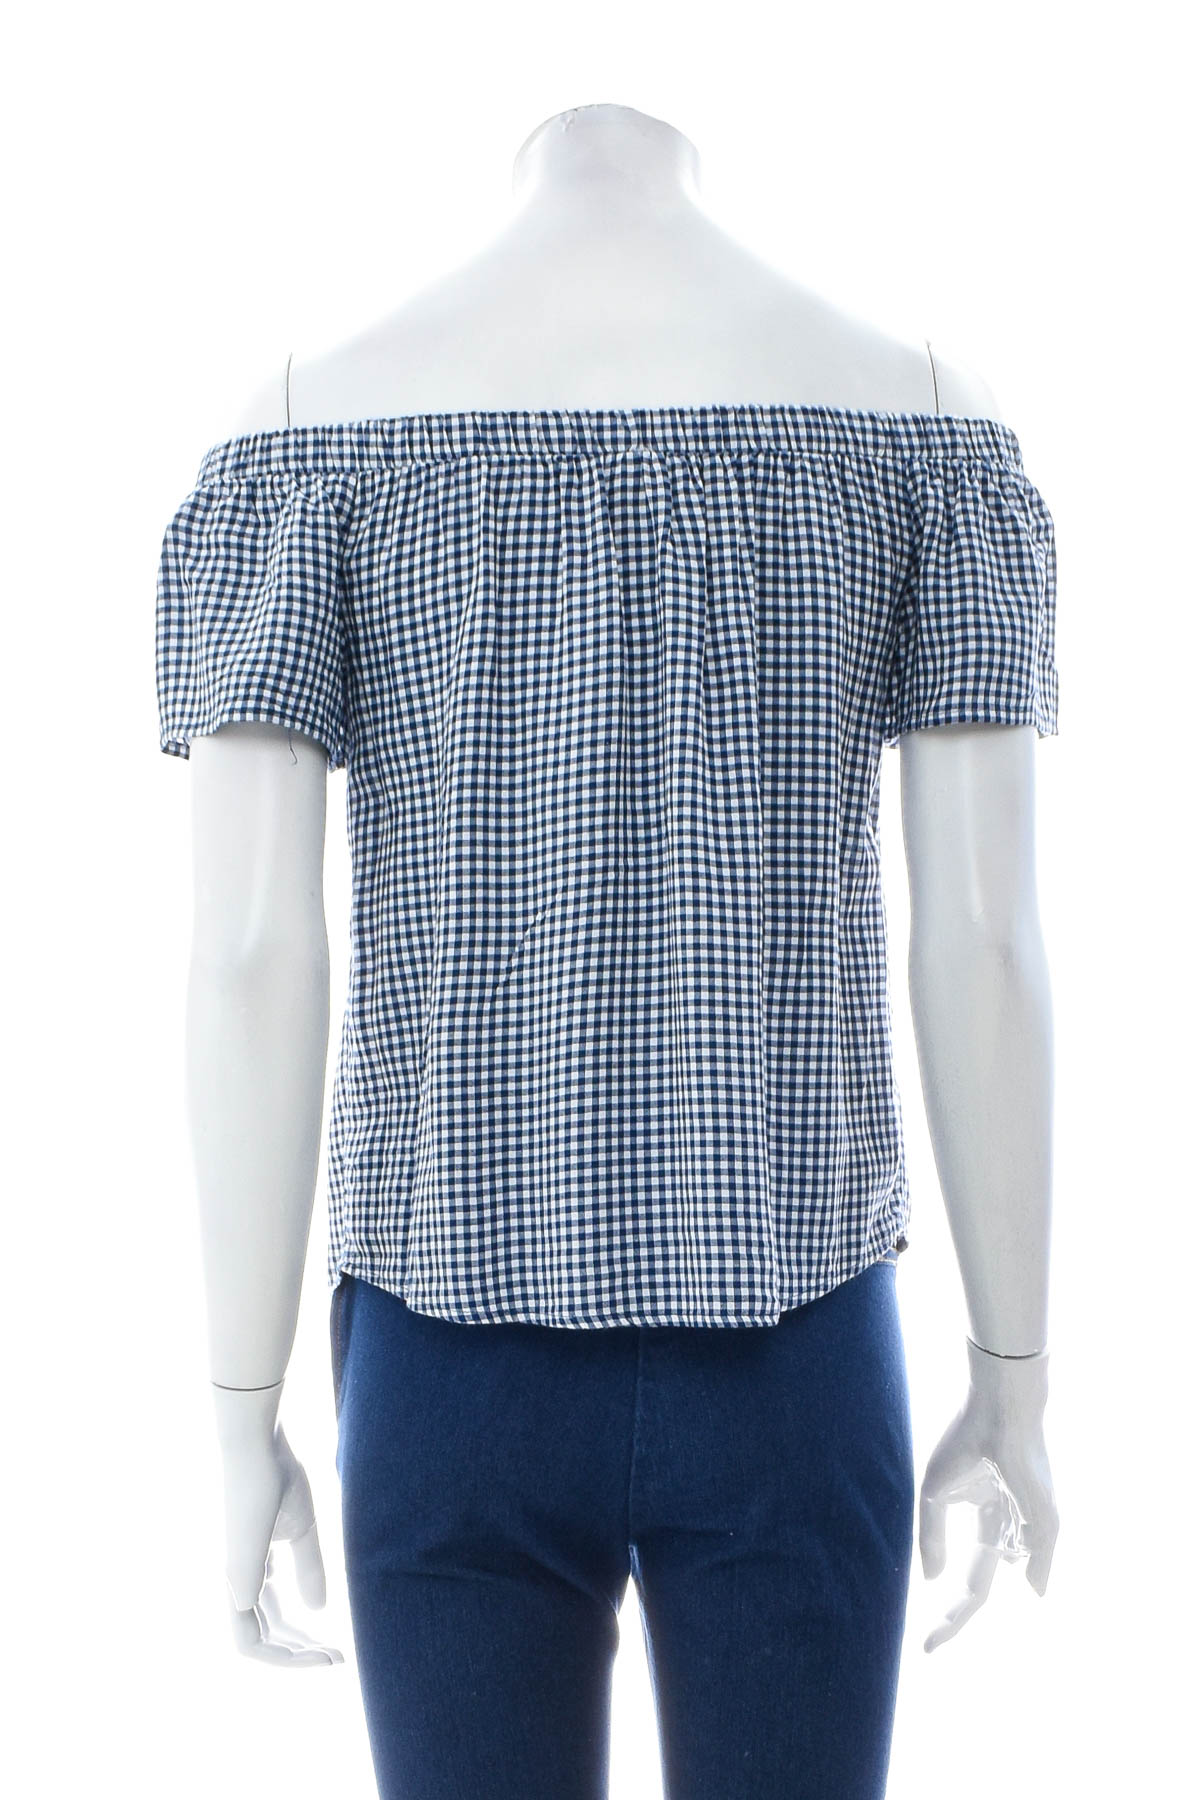 Γυναικείо πουκάμισο - Mossimo Supply Co - 1